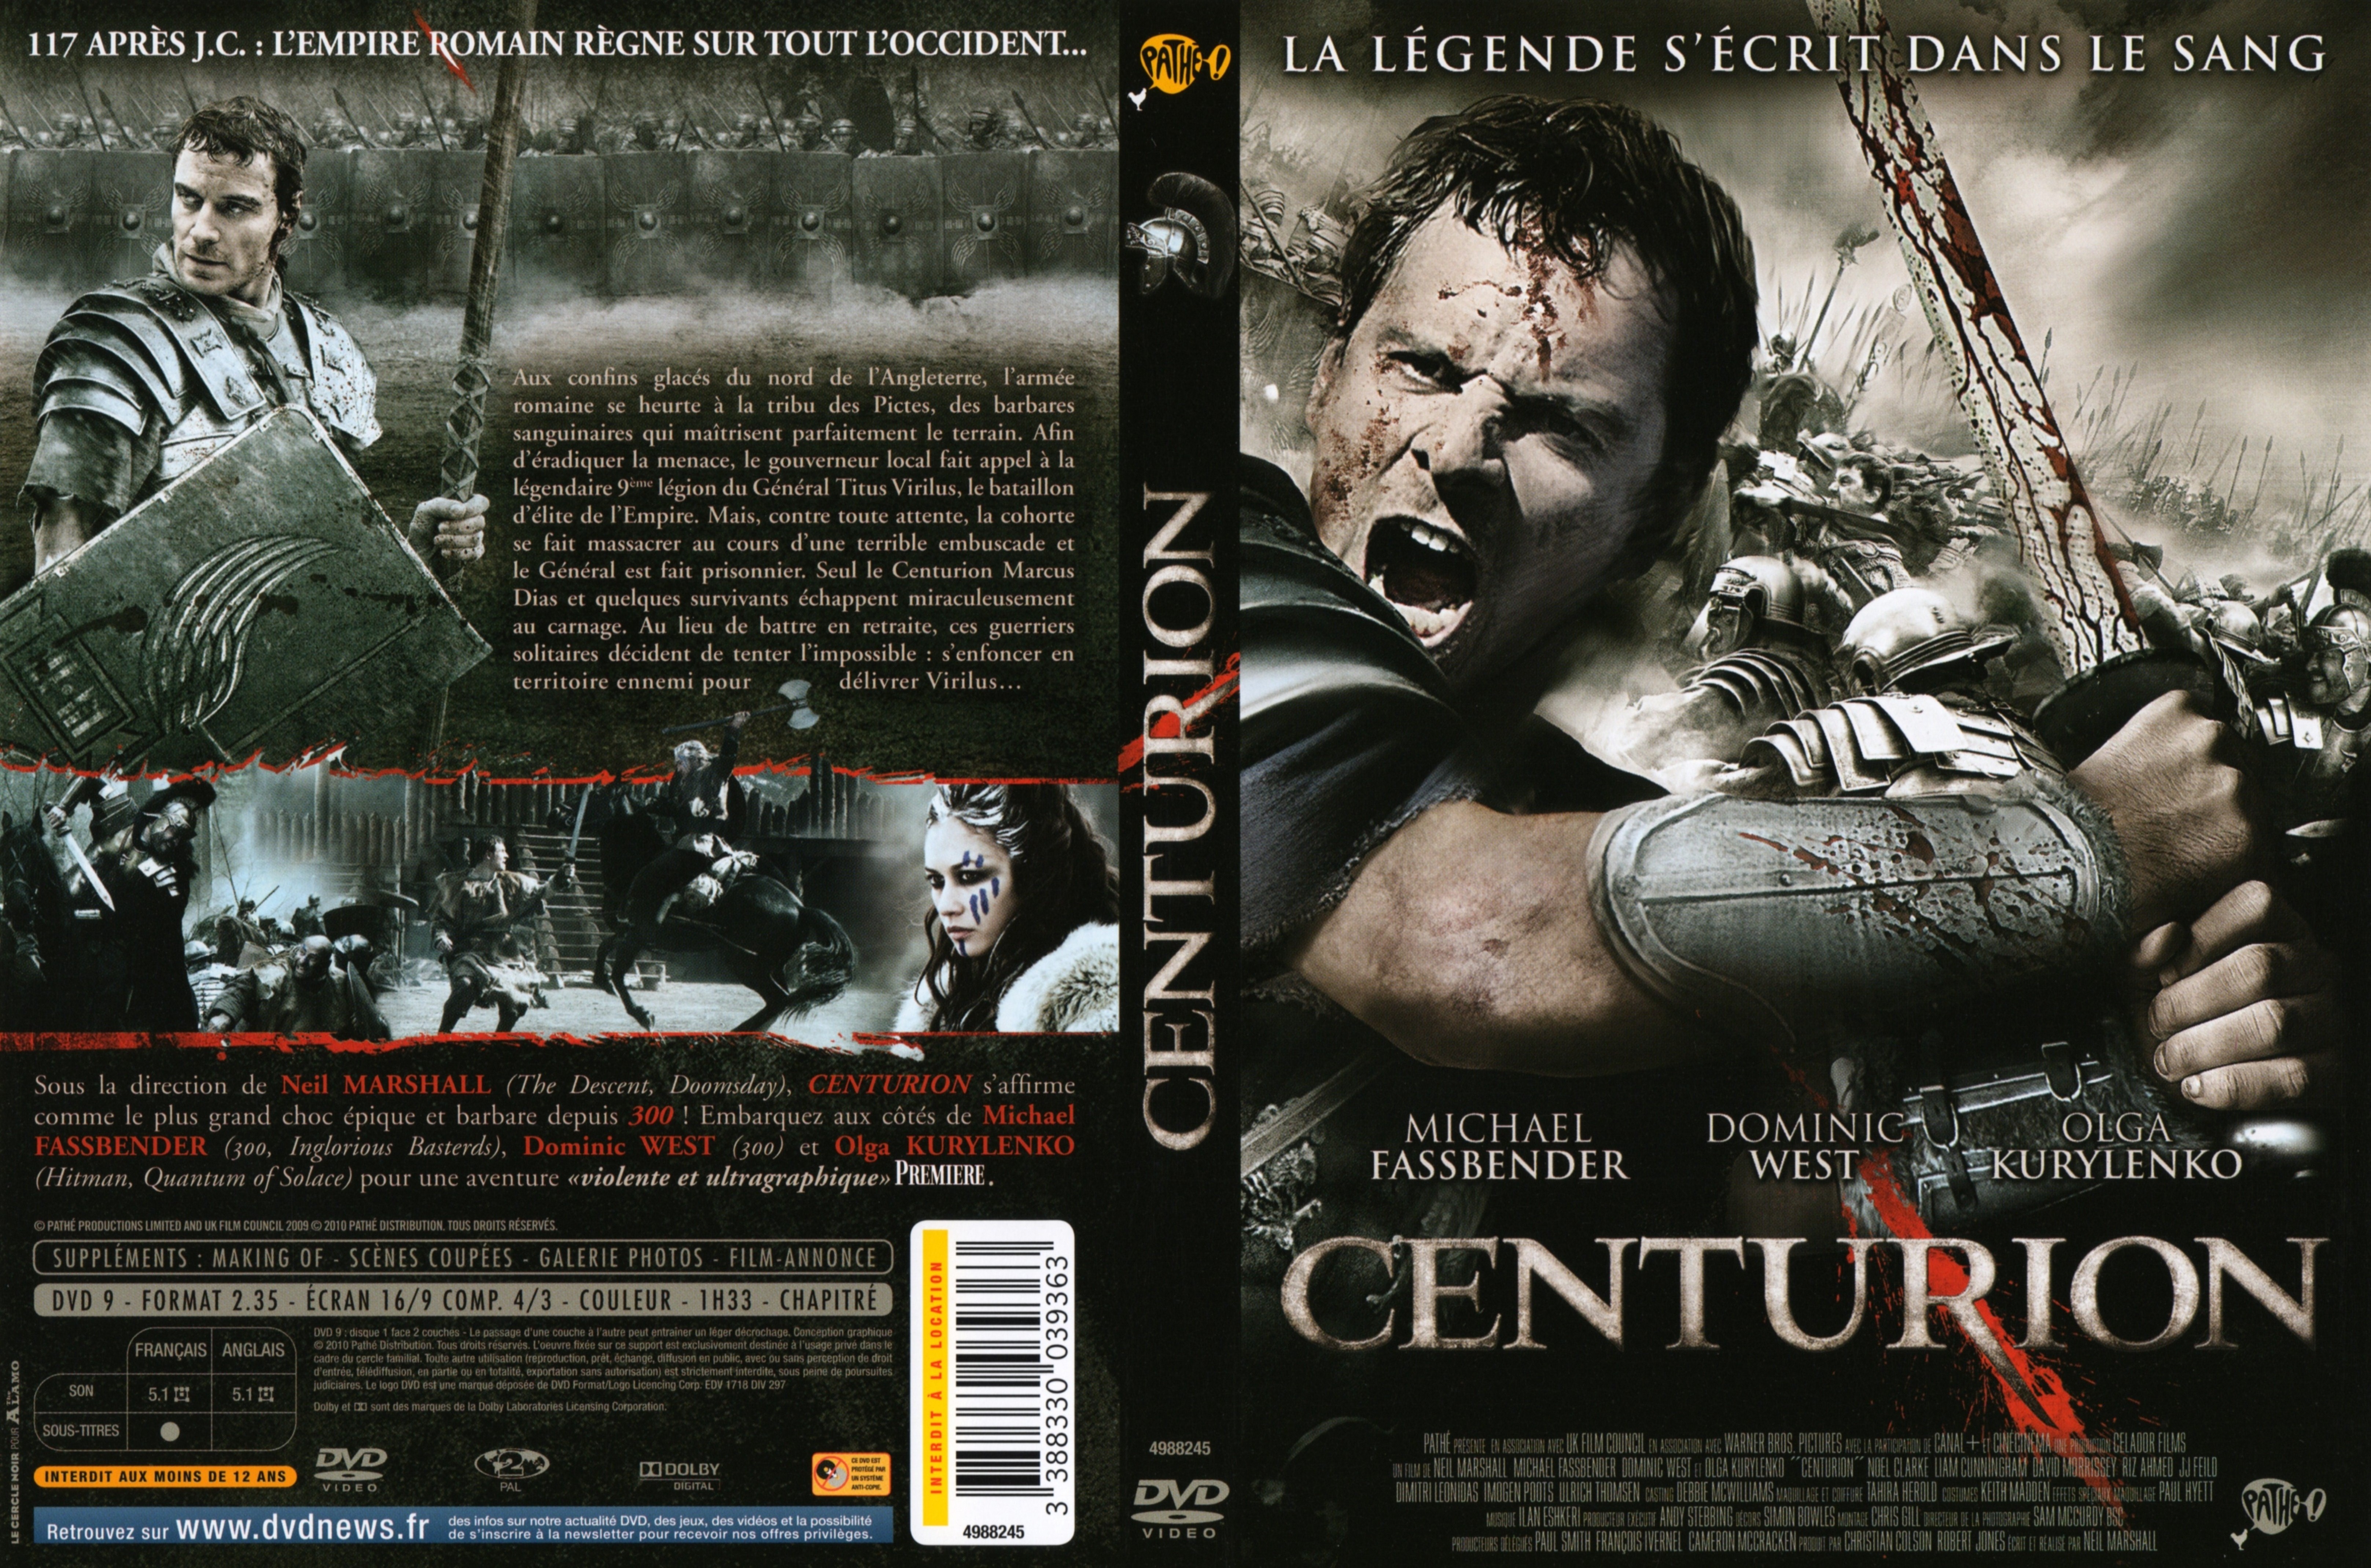 Jaquette DVD Centurion